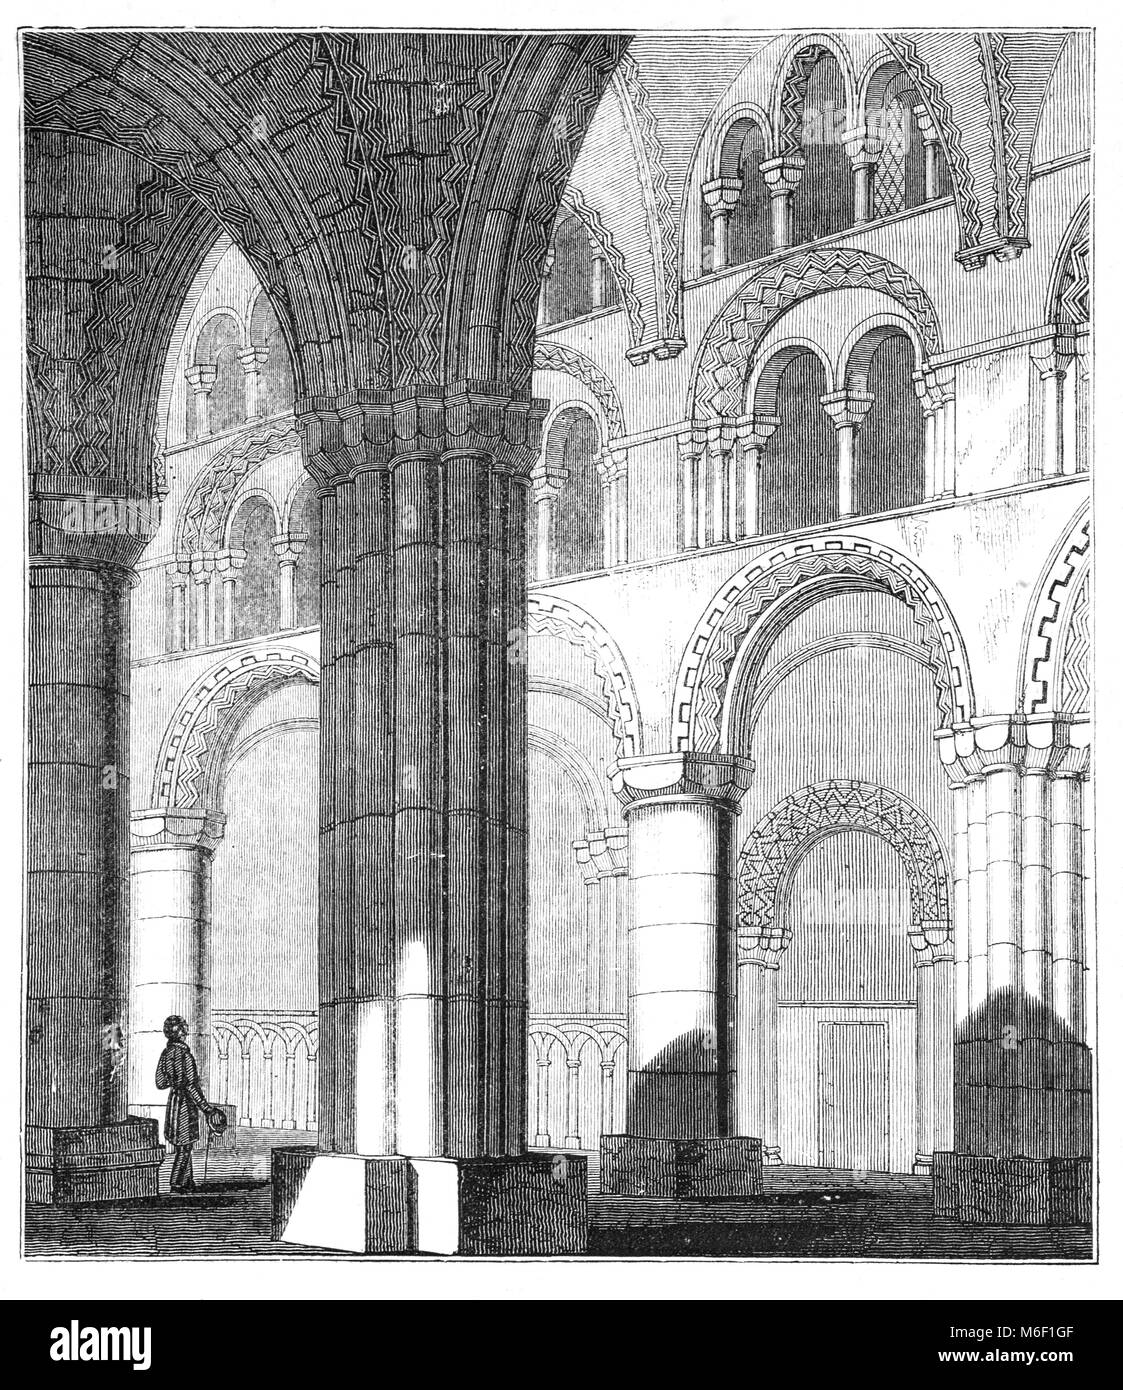 La navata del romanico normanno La cattedrale di Durham, la casa del santuario di St Cuthbert. La presente cattedrale della città di Durham, Inghilterra, sostituito il decimo secolo "Chiesa bianca", costruito come parte di una fondazione monastica per alloggiare il santuario di San Cutberto di Lindisfarne. Foto Stock